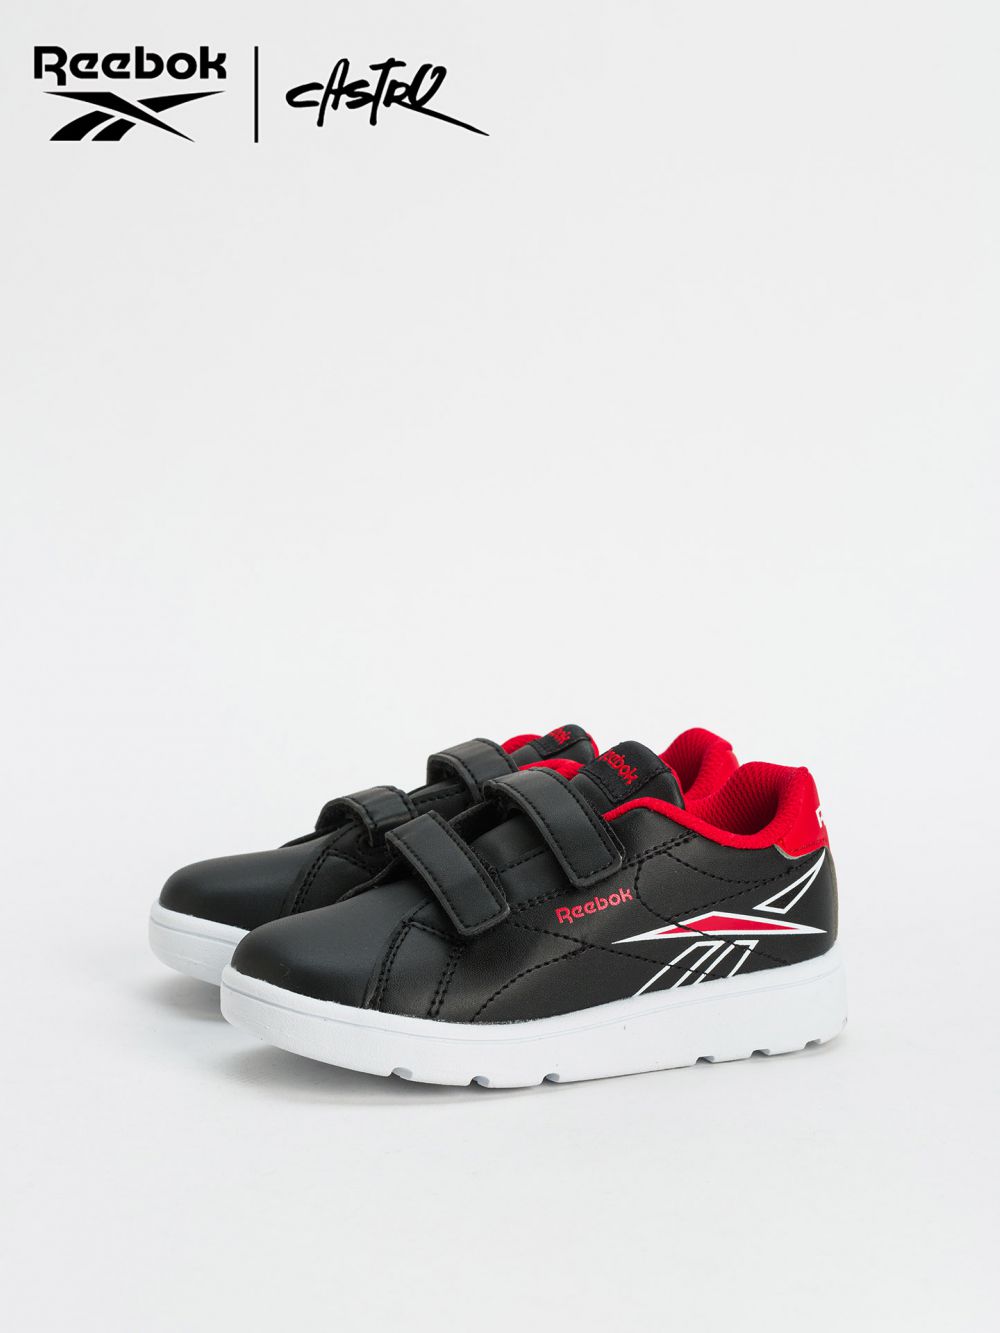 נעלי Reebok שחור ואדום - מידות קטנות